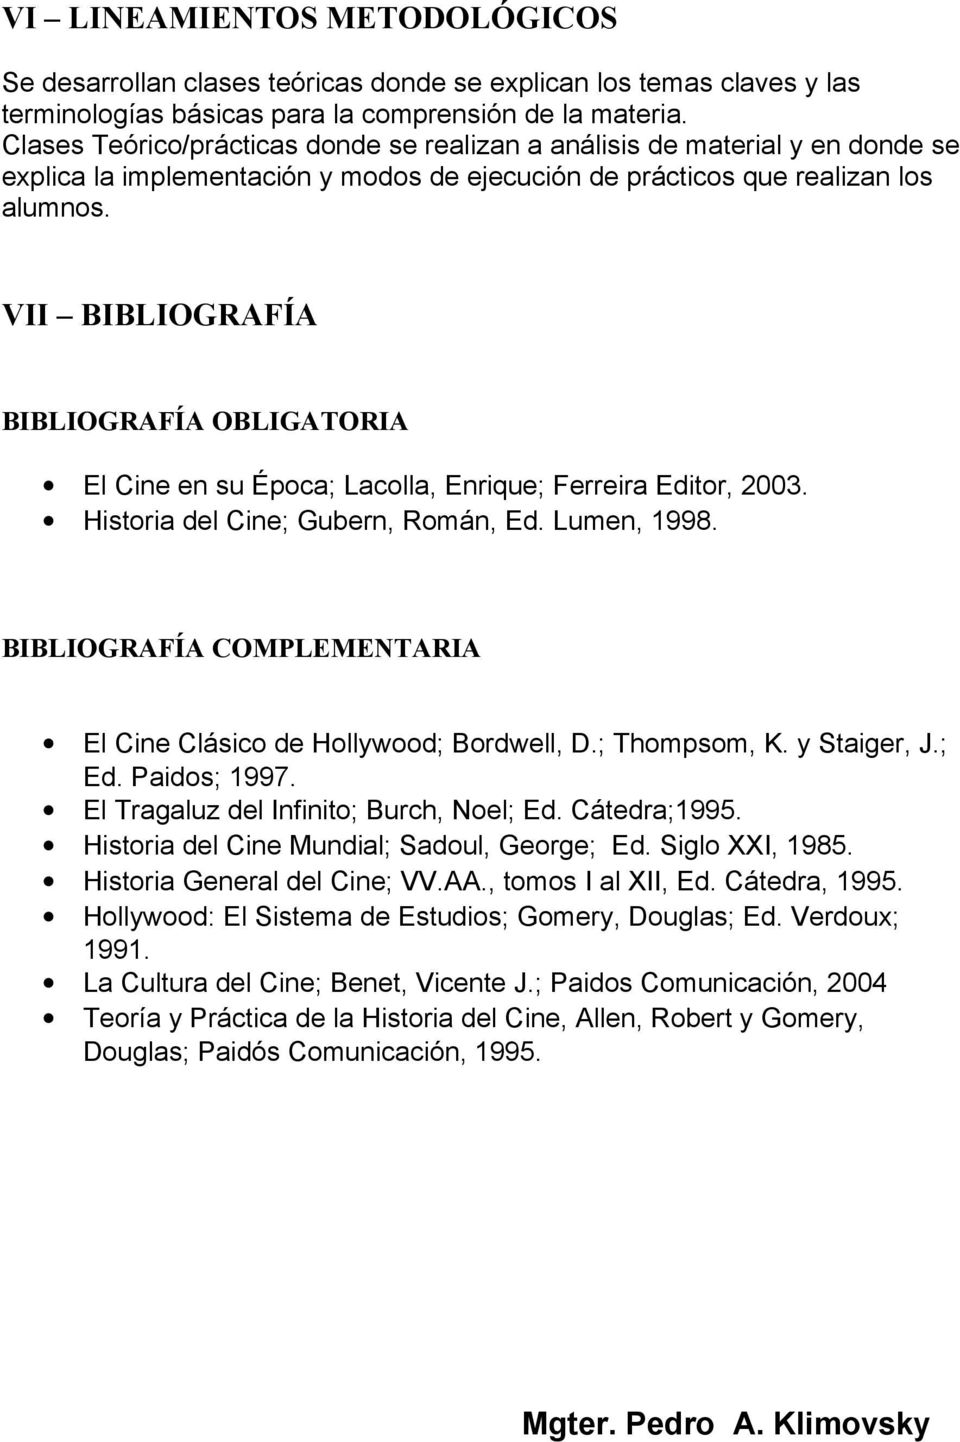 VII BIBLIOGRAFÍA BIBLIOGRAFÍA OBLIGATORIA El Cine en su Época; Lacolla, Enrique; Ferreira Editor, 2003. Historia del Cine; Gubern, Román, Ed. Lumen, 1998.